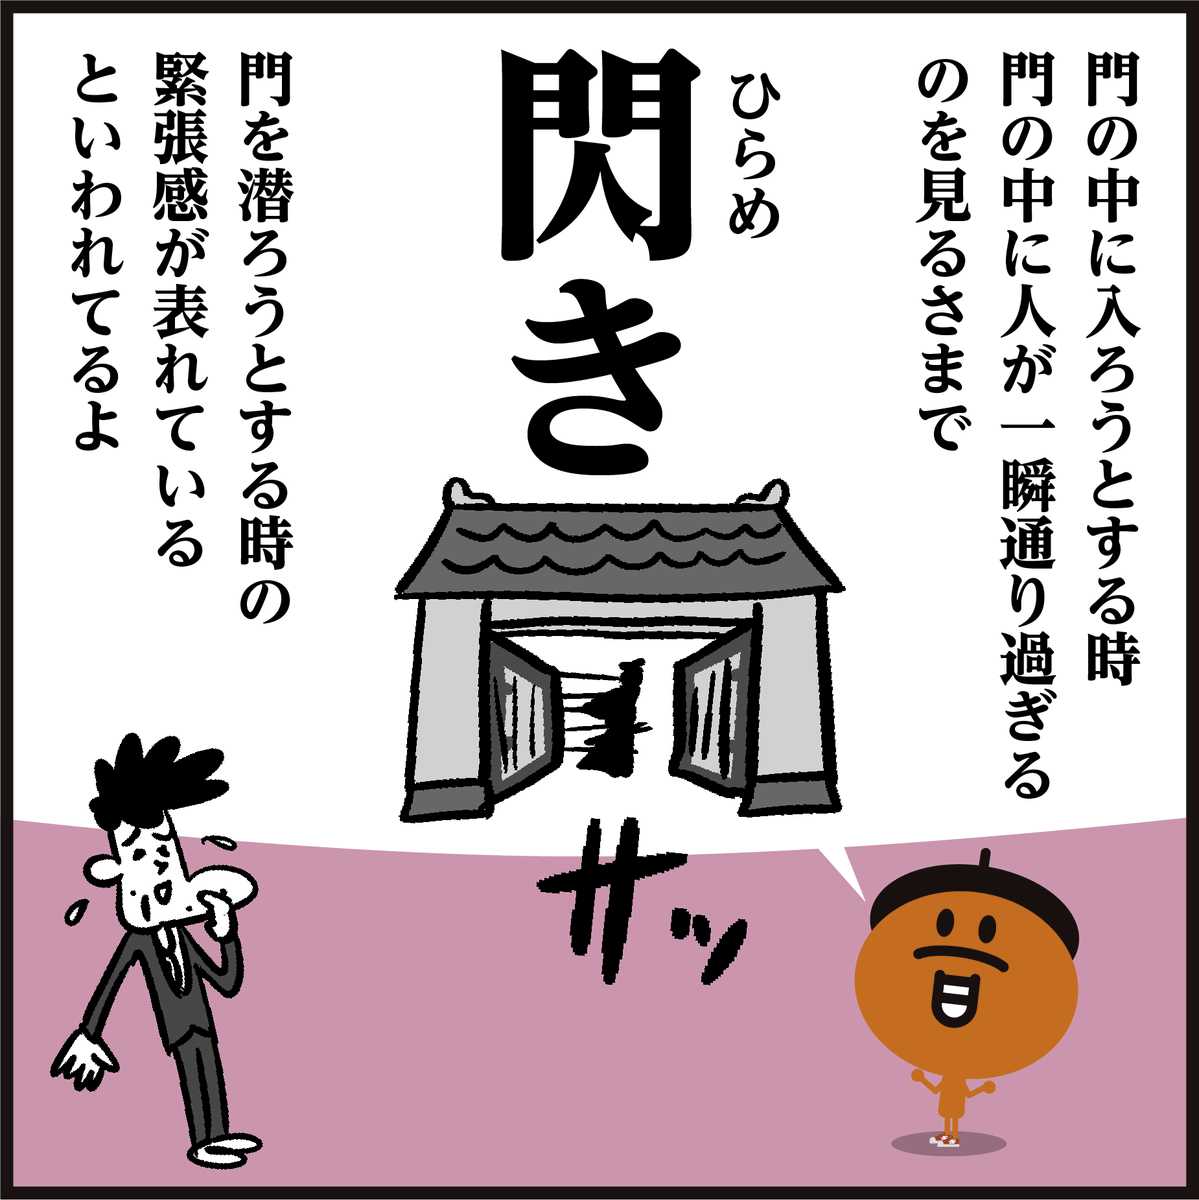 漢字【閃き】読めましたか?
🤔【閃】なぜ「門」の中に「人」?? #イラスト #クイズ #4コマ漫画 